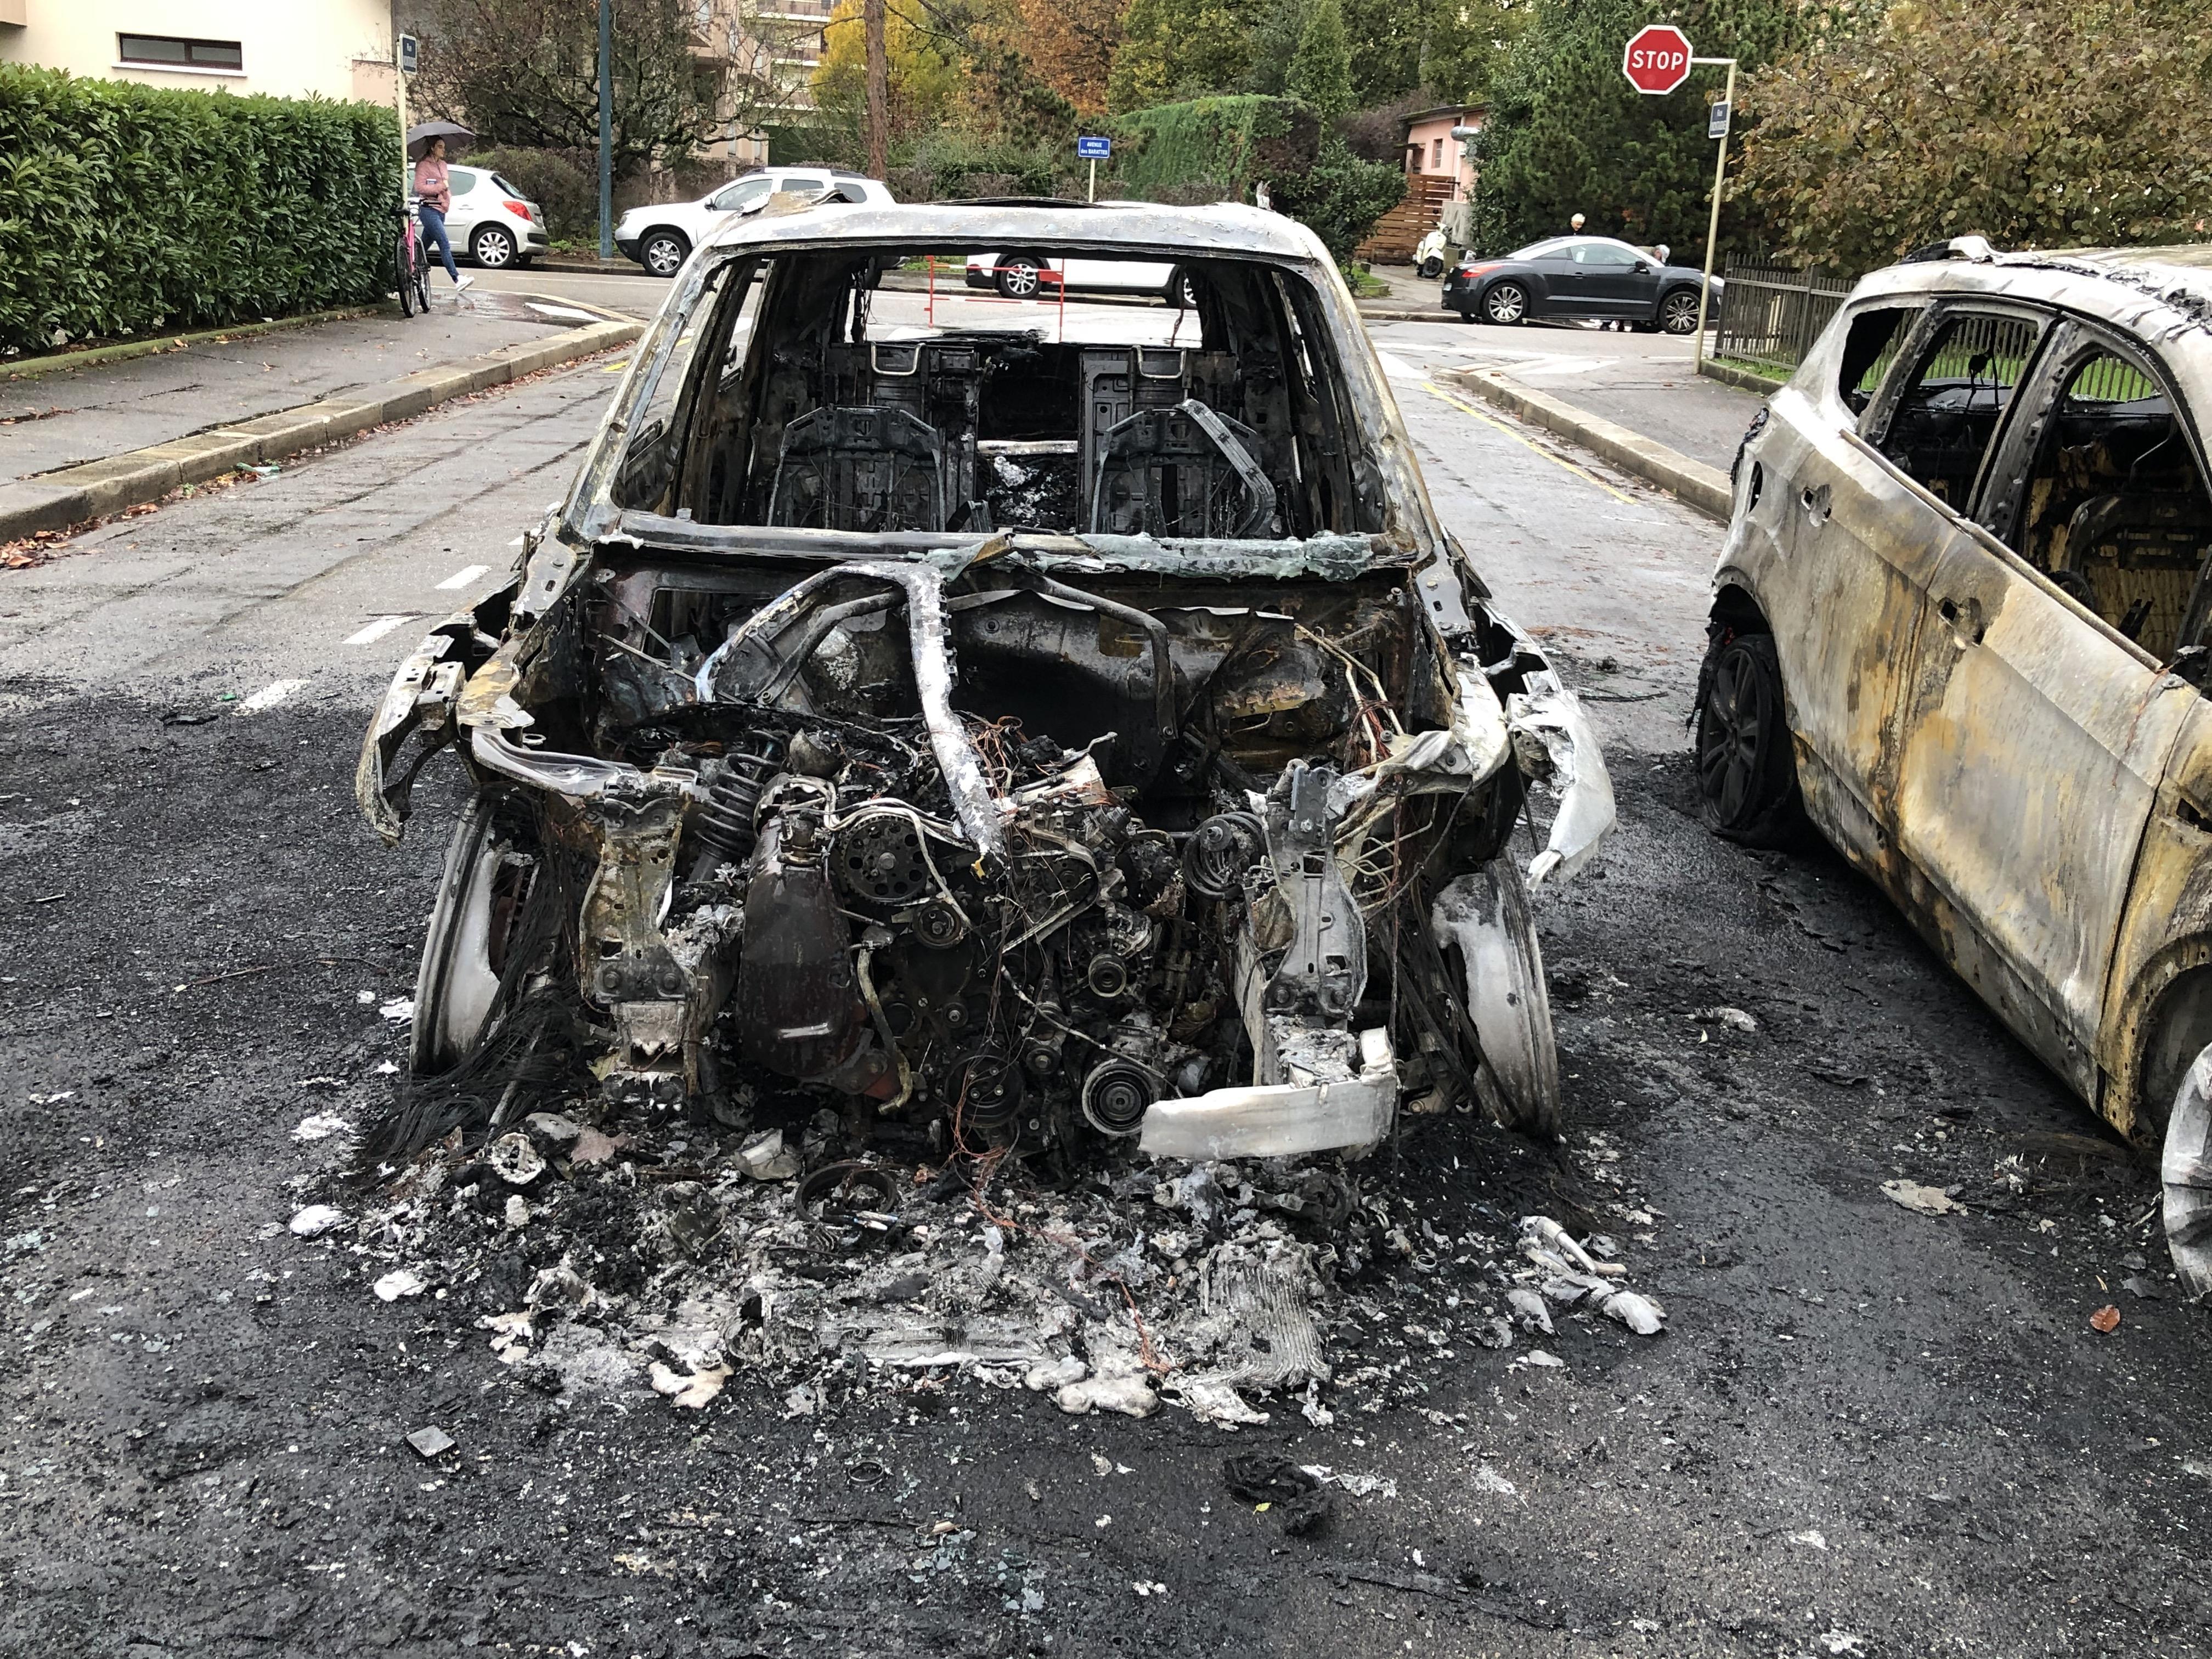 Annecy : une voiture brûle, les flammes se propagent à trois autres véhicules